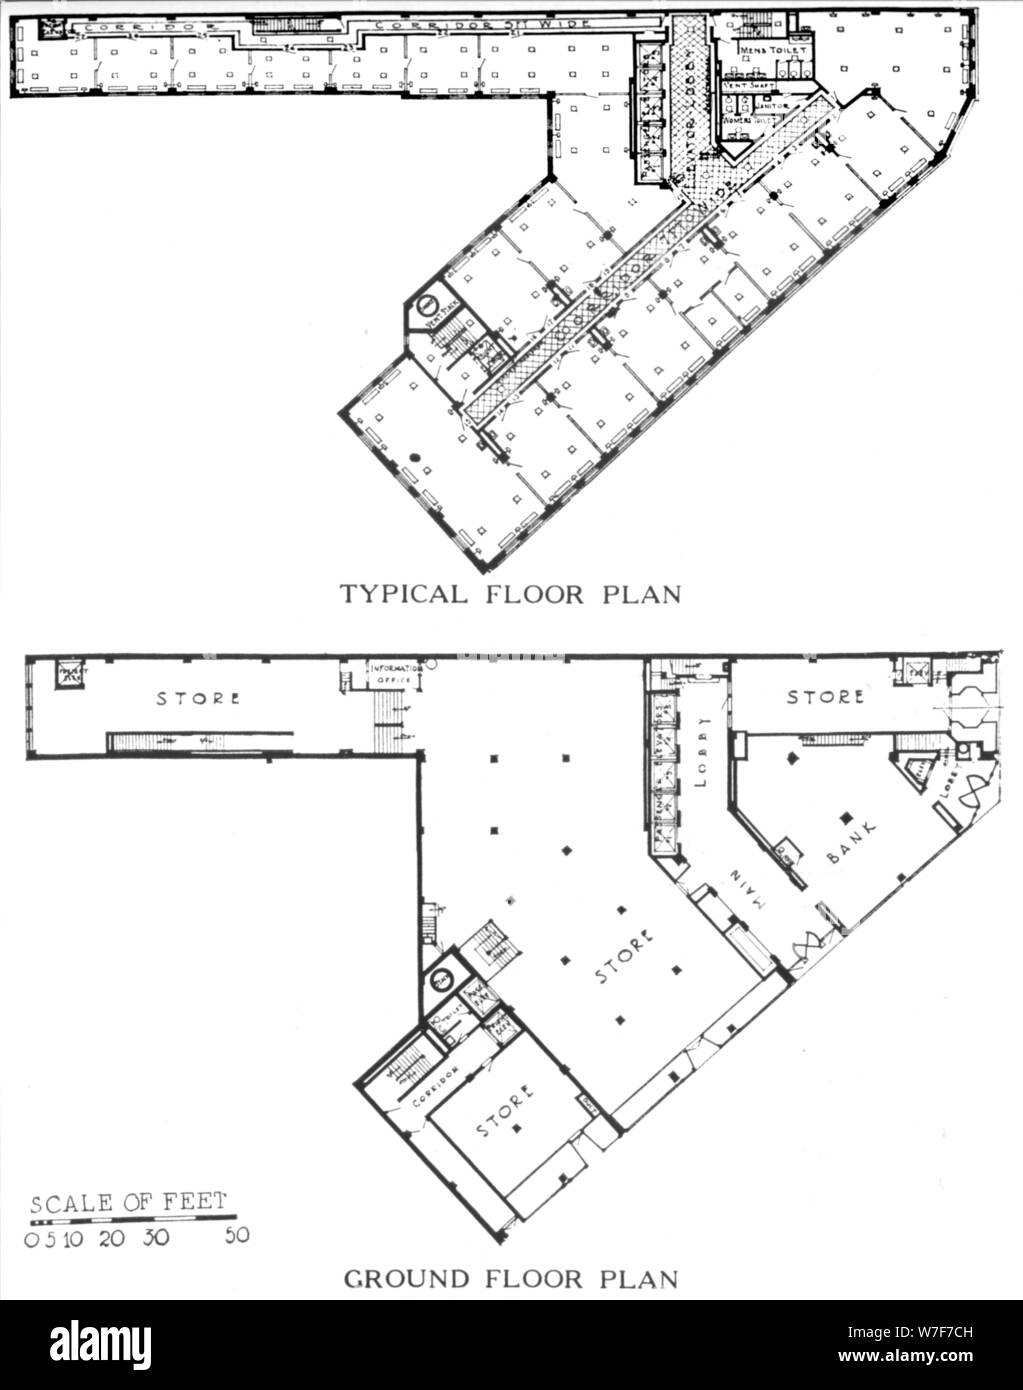 Planos de planta, el edificio Genesee, Buffalo, Nueva York, 1924. Artista: Desconocido. Foto de stock